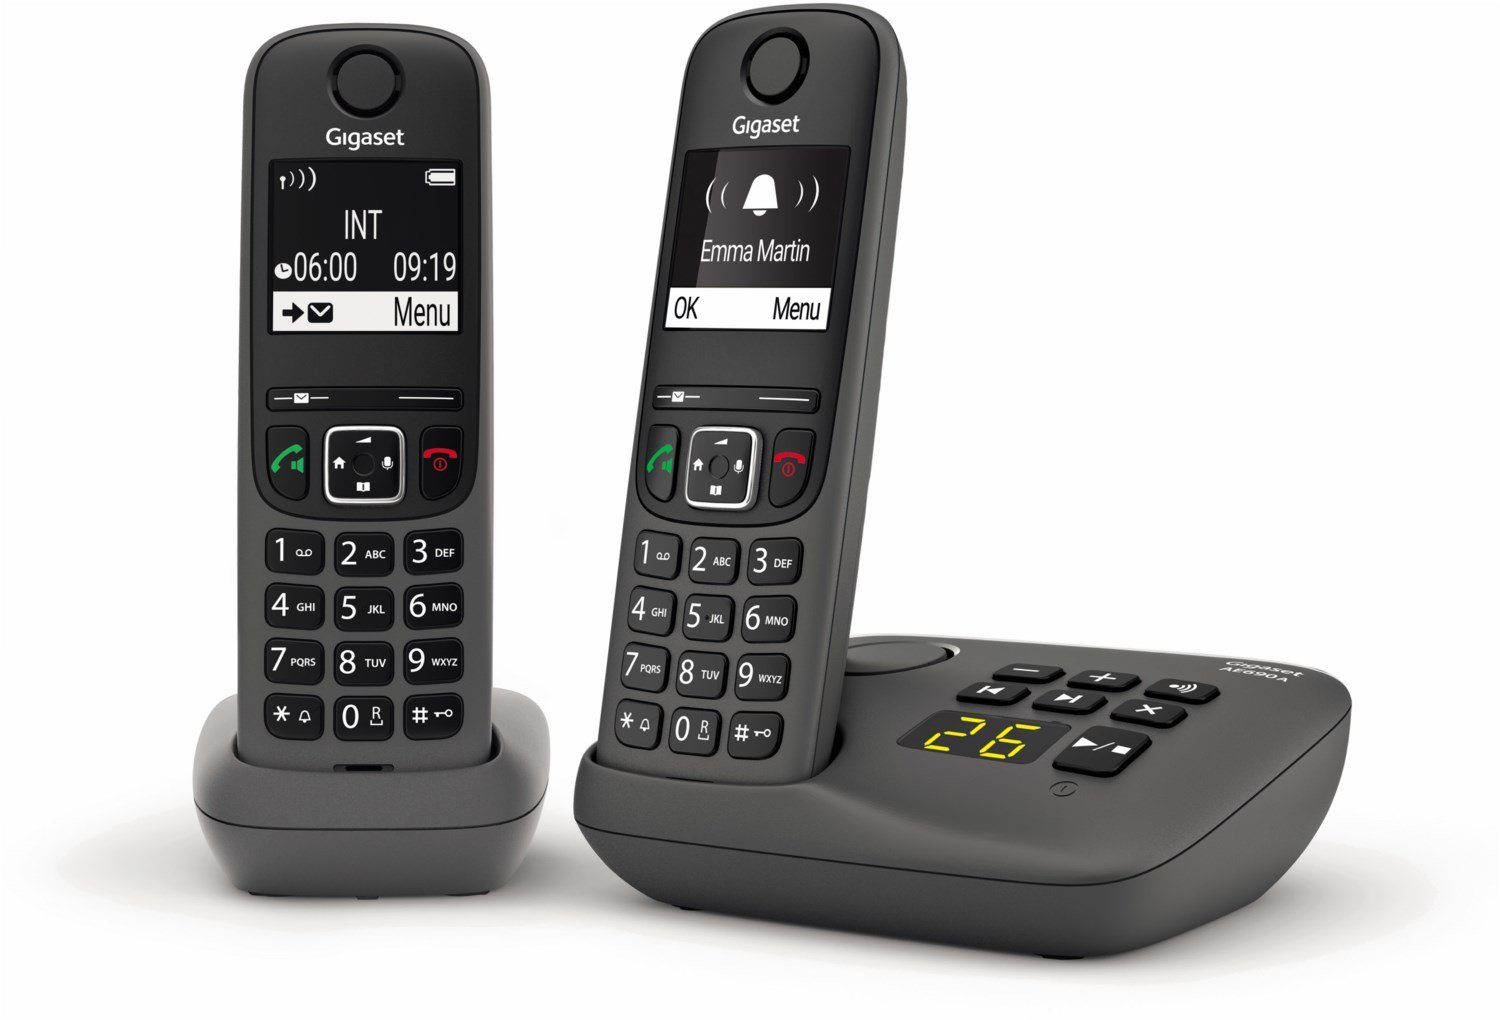 ( Schnurloses Schnurlostelefon Mobilteile: schwarz-weiß DECT-Telefon Grafik-Display Gigaset mit Beleuchtetes Anrufbeantworter Gigaset Freisprechen), hohem 2, Kontrast Duo DECT & AE690A mit